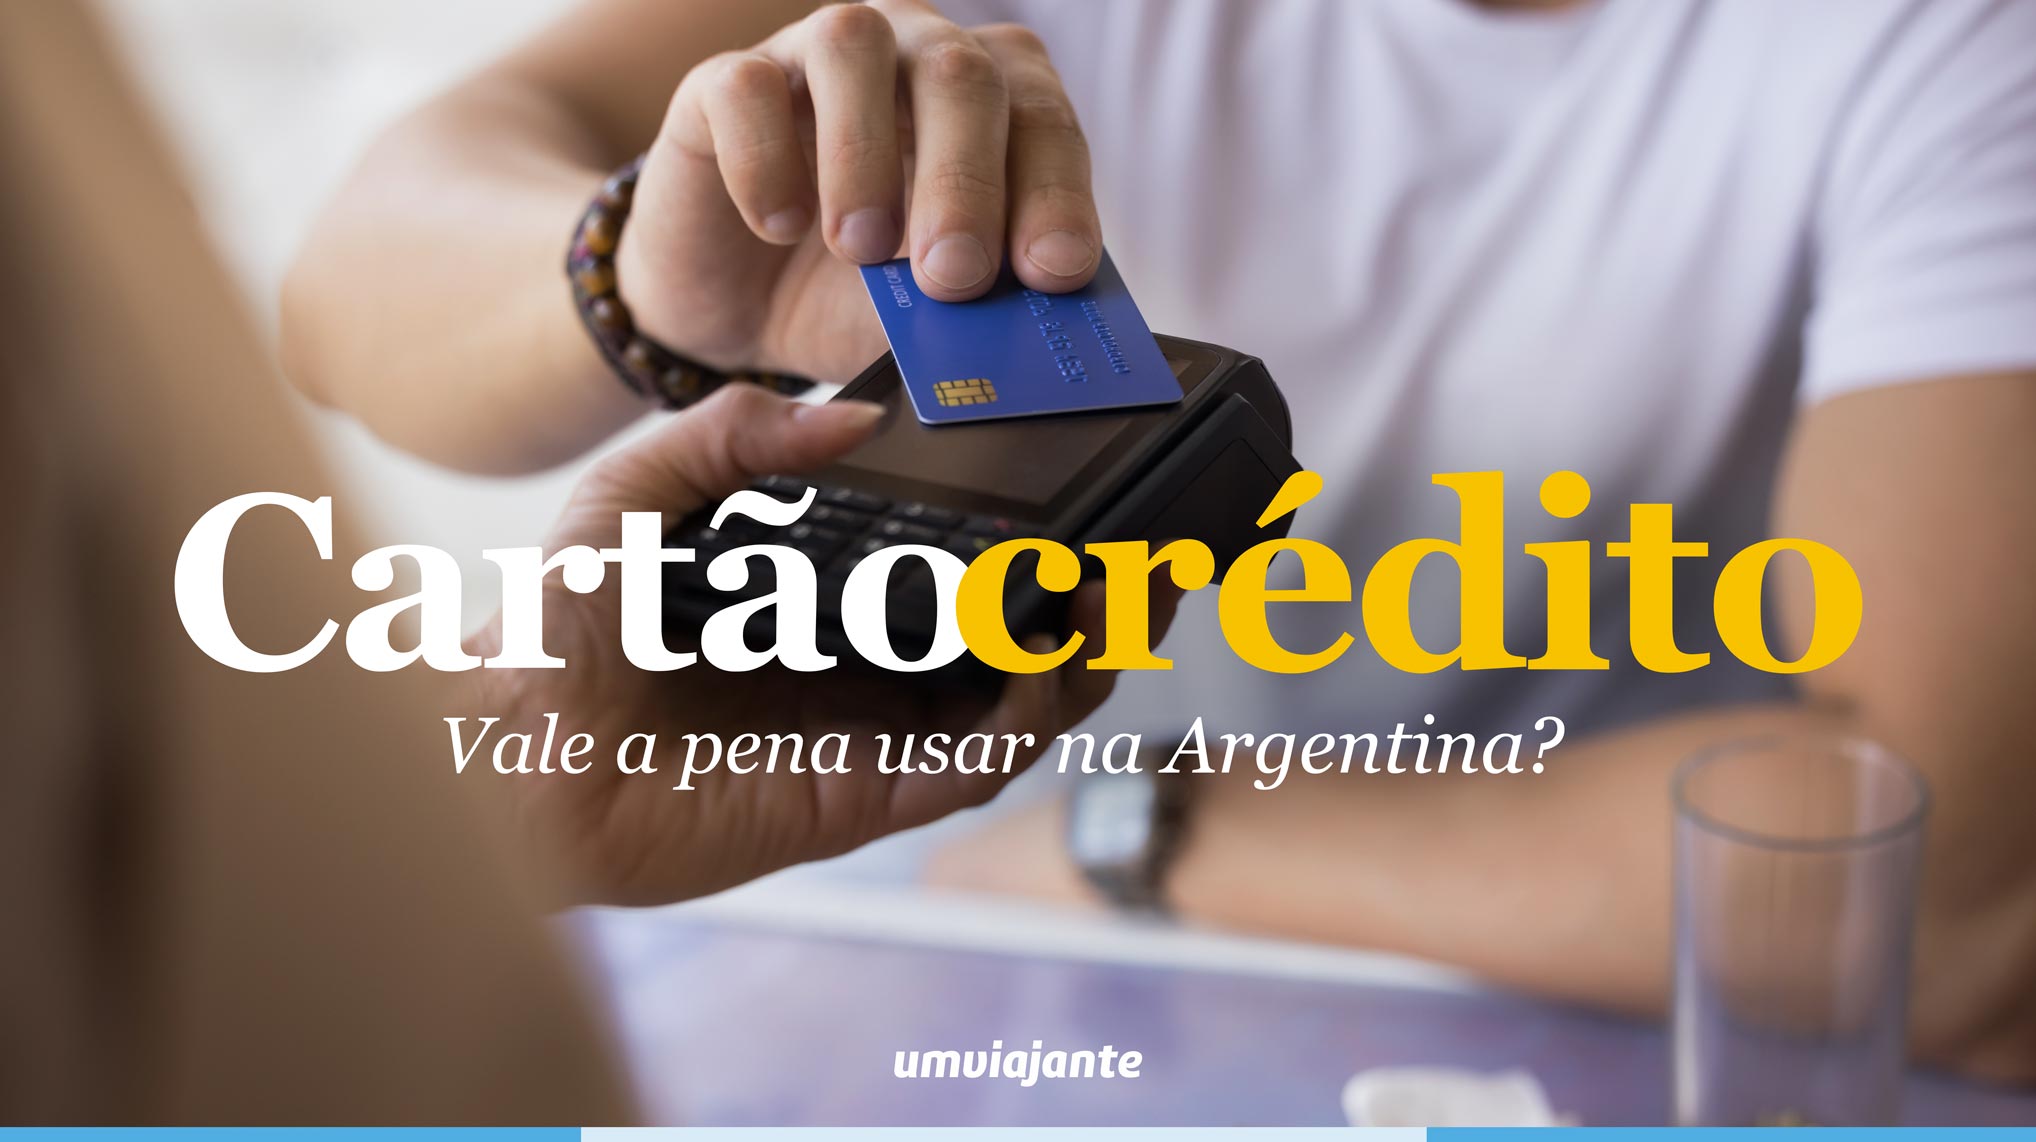 Cartão de crédito na Argentina: vale a pena?